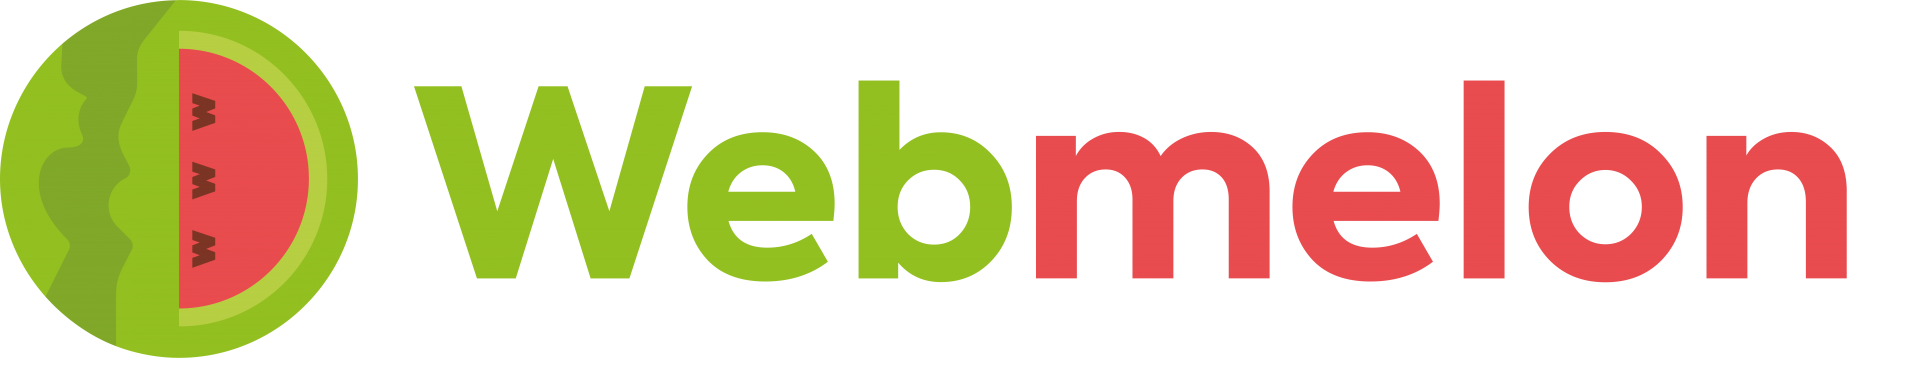 Webmelon logo